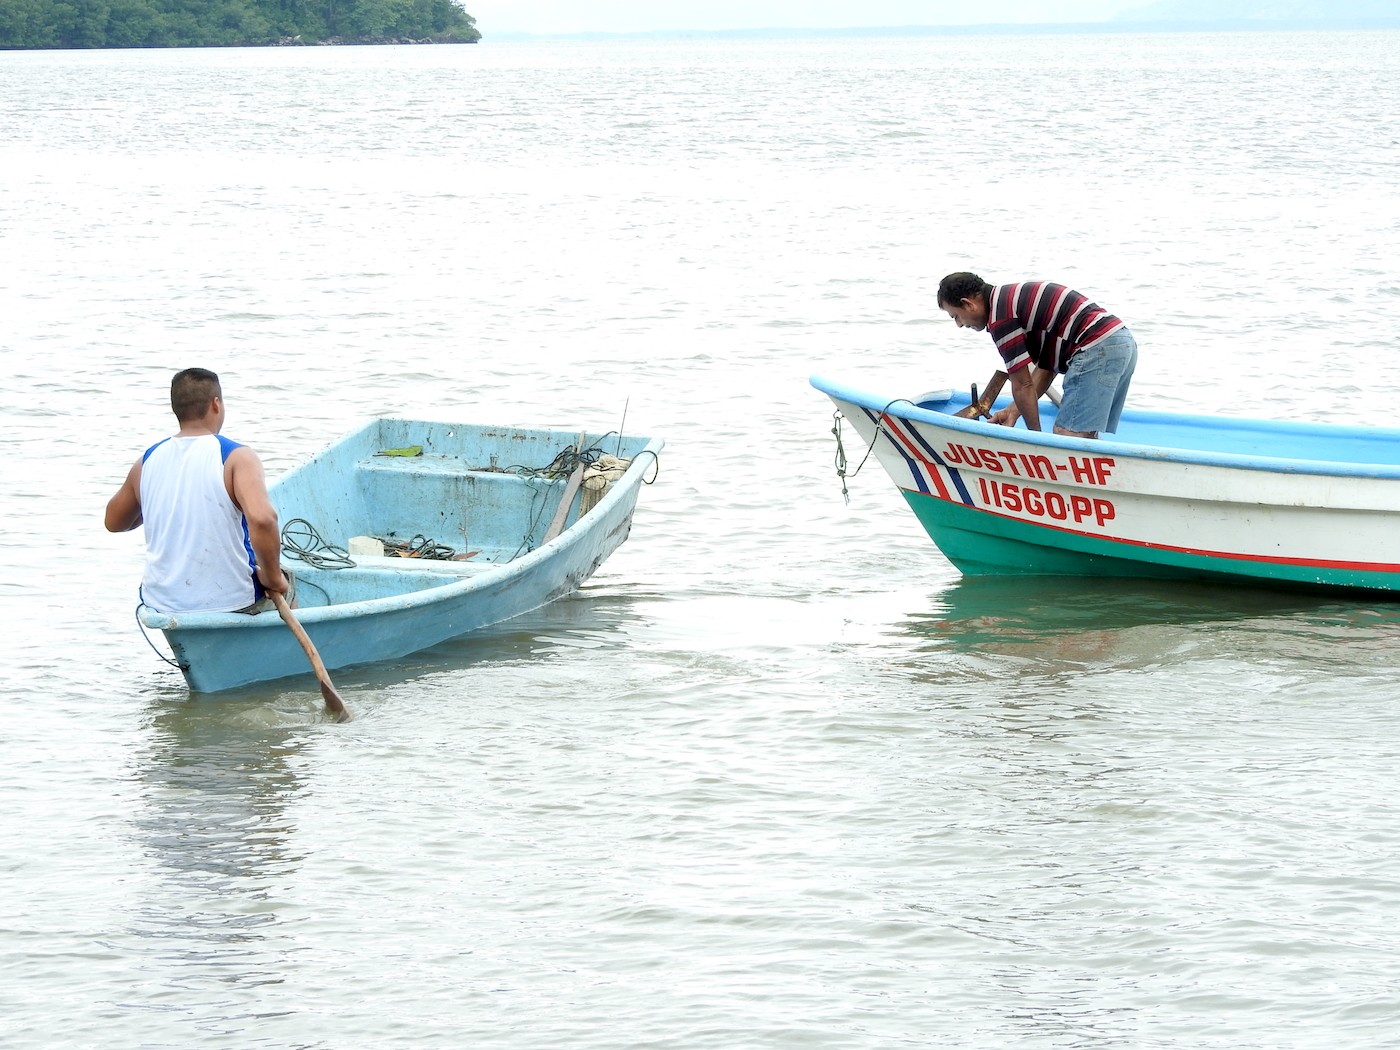 Municipalidades y diputados son los principales llamados a resolver problemas en zonas costeras, revela encuesta de la UNA